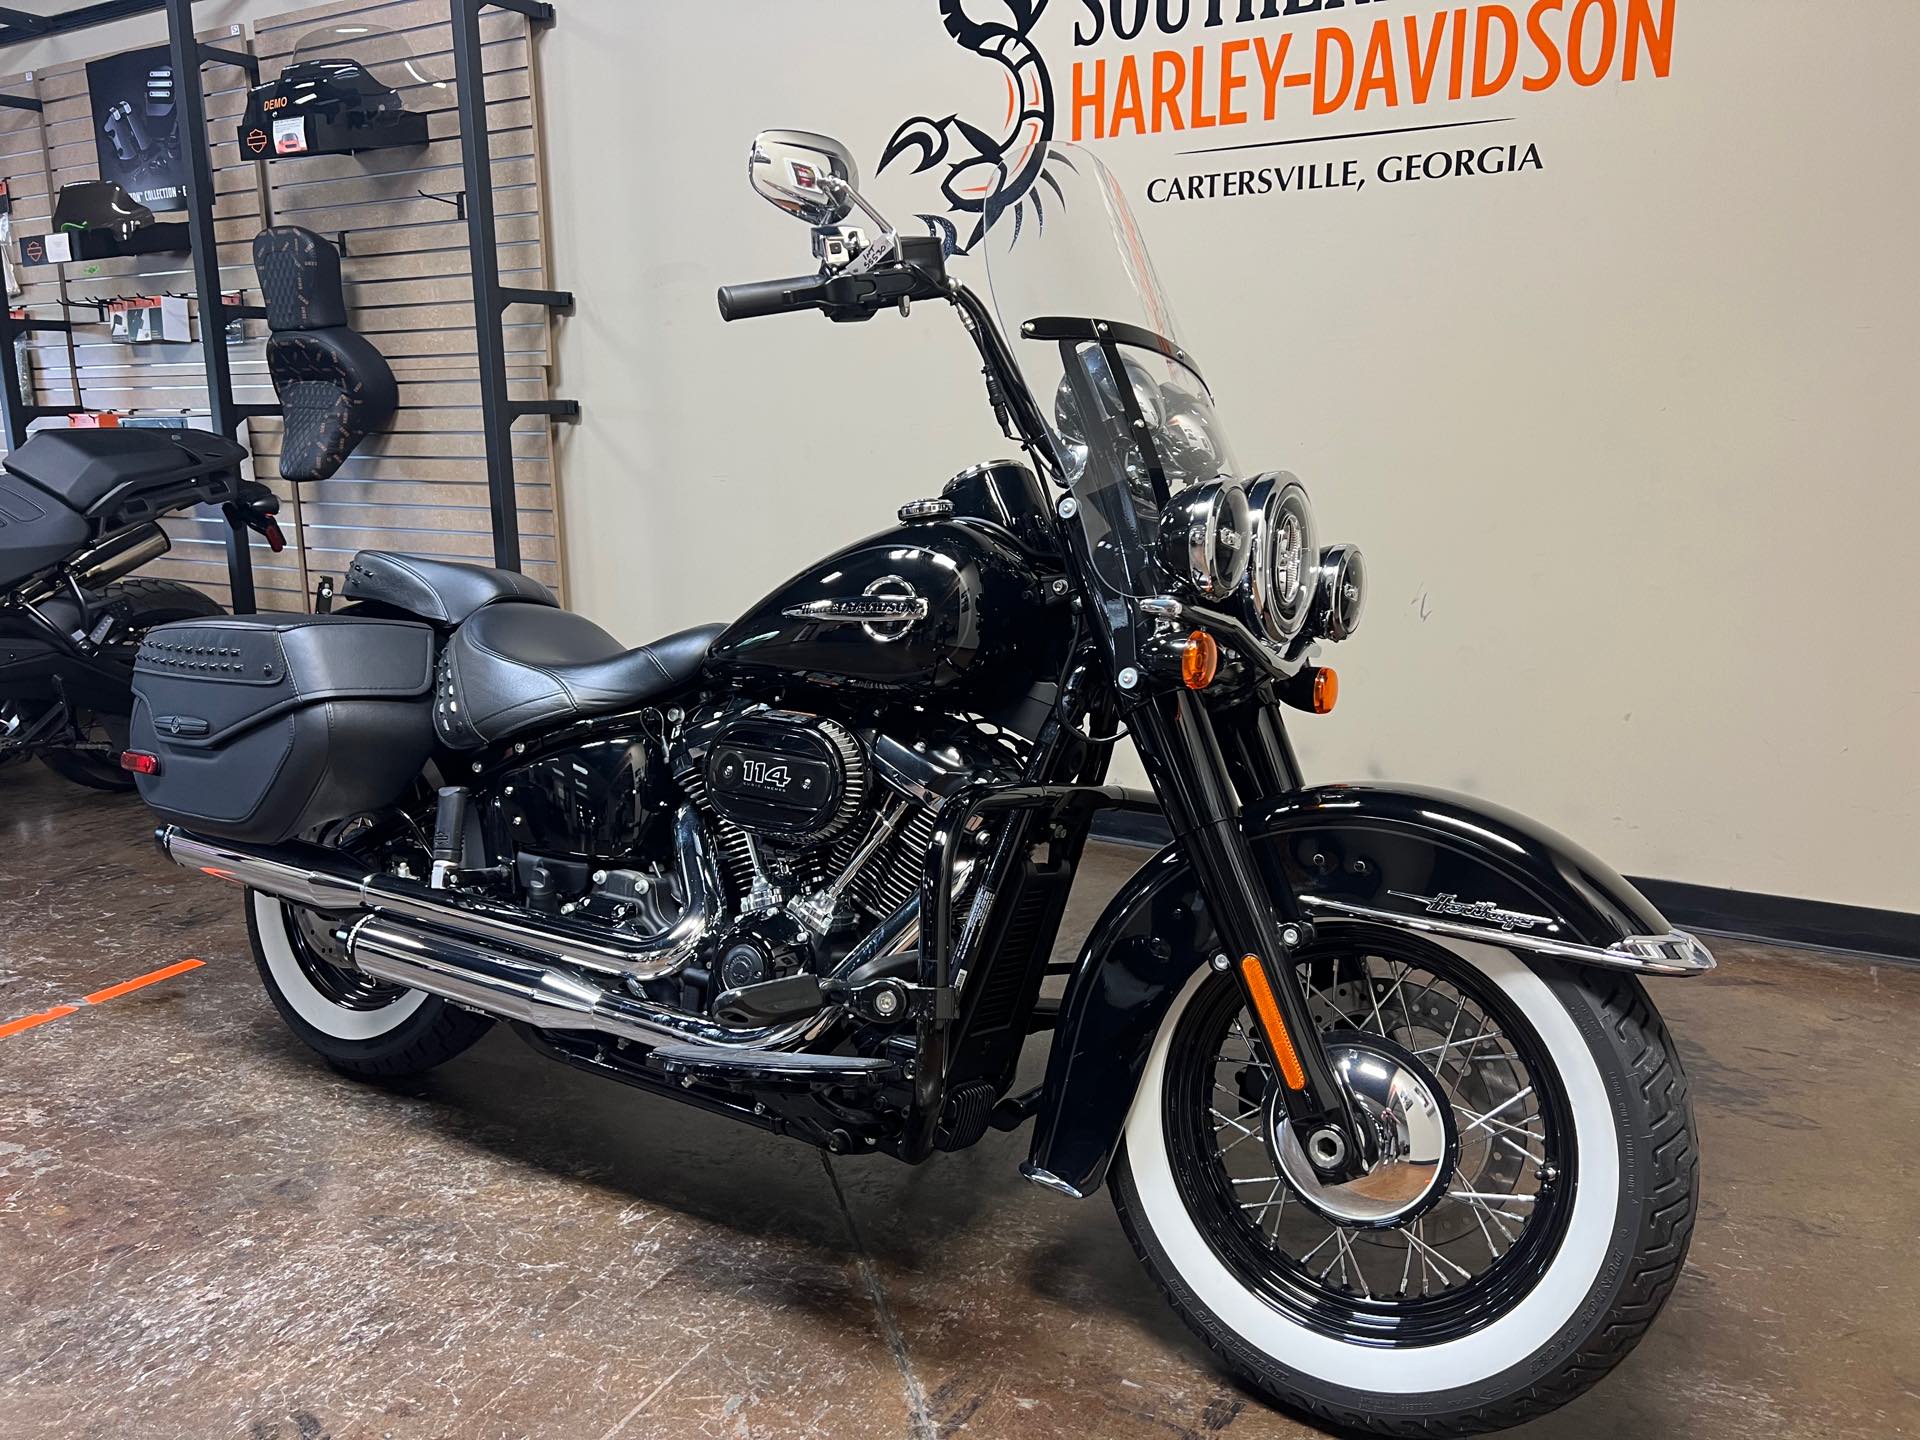 2020 Harley-Davidson FLHCS at Southern Devil Harley-Davidson